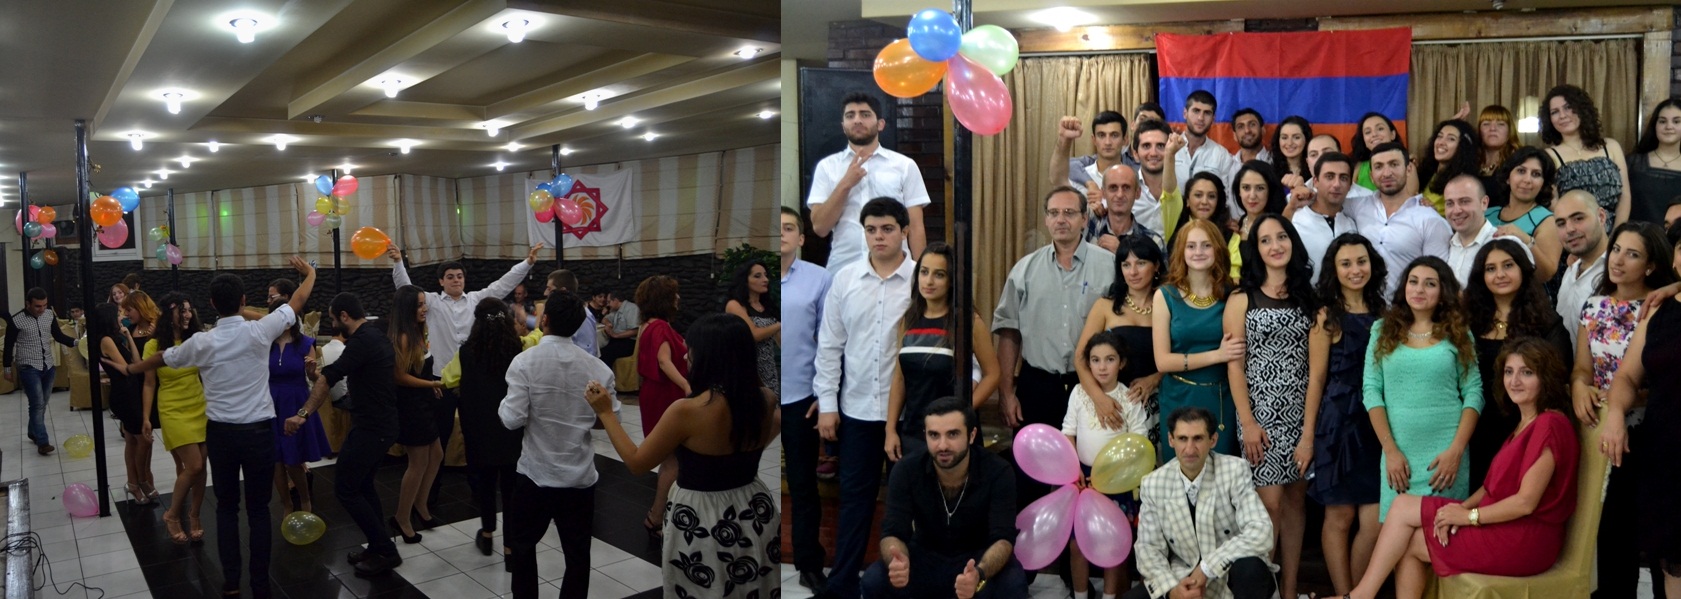 Община Армян Грузии отметила 24 день рождения Республики Армения